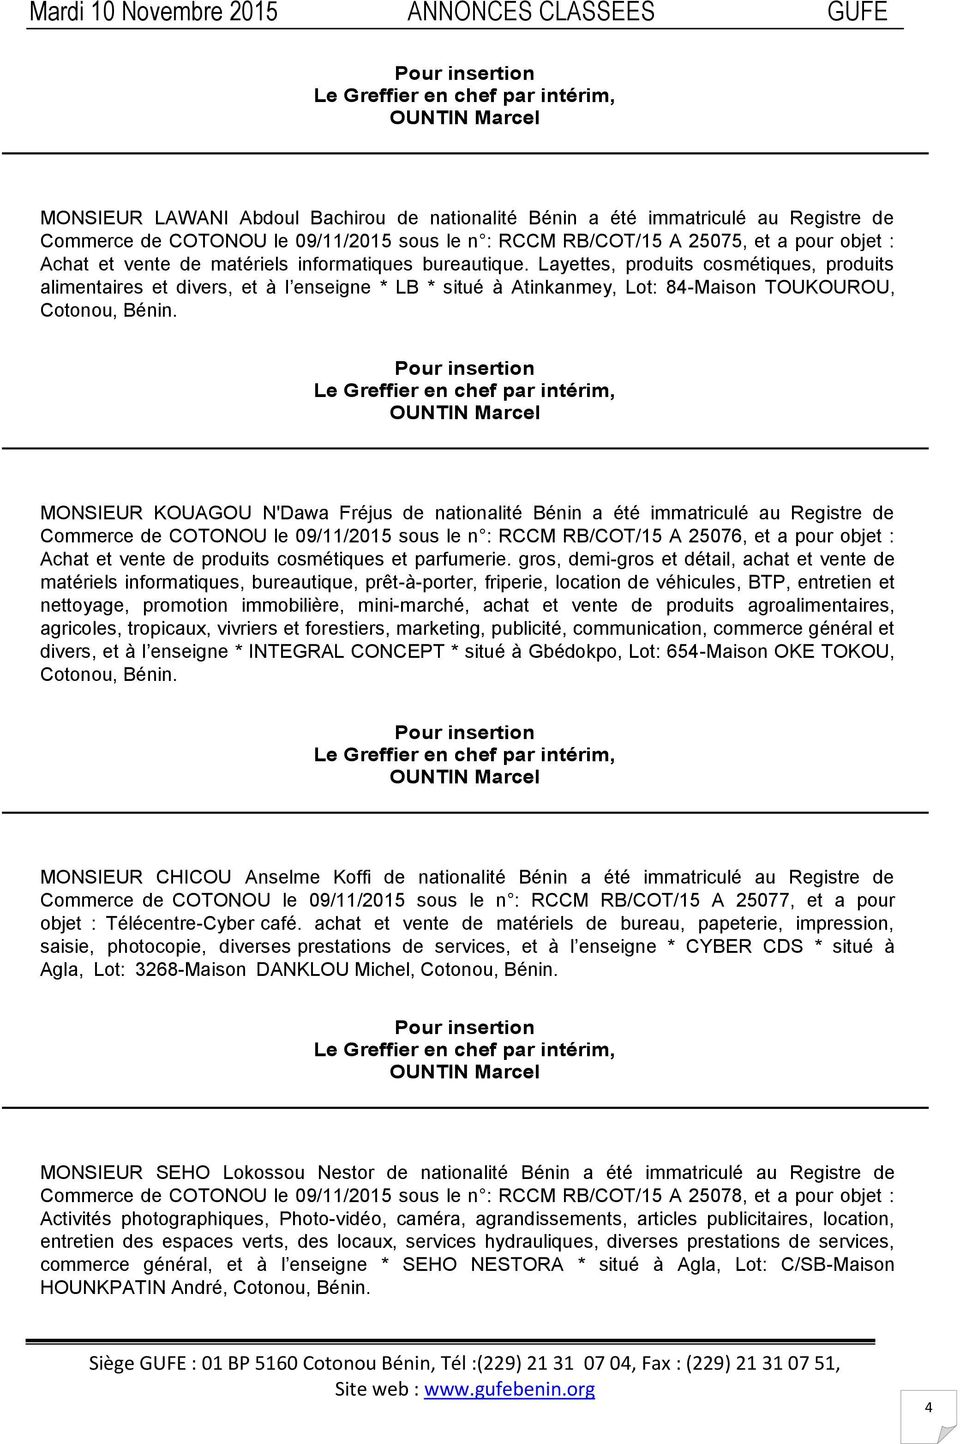 MONSIEUR KOUAGOU N'Dawa Fréjus de nationalité Bénin a été immatriculé au Registre de Commerce de COTONOU le 09/11/2015 sous le n : RCCM RB/COT/15 A 25076, et a pour objet : Achat et vente de produits